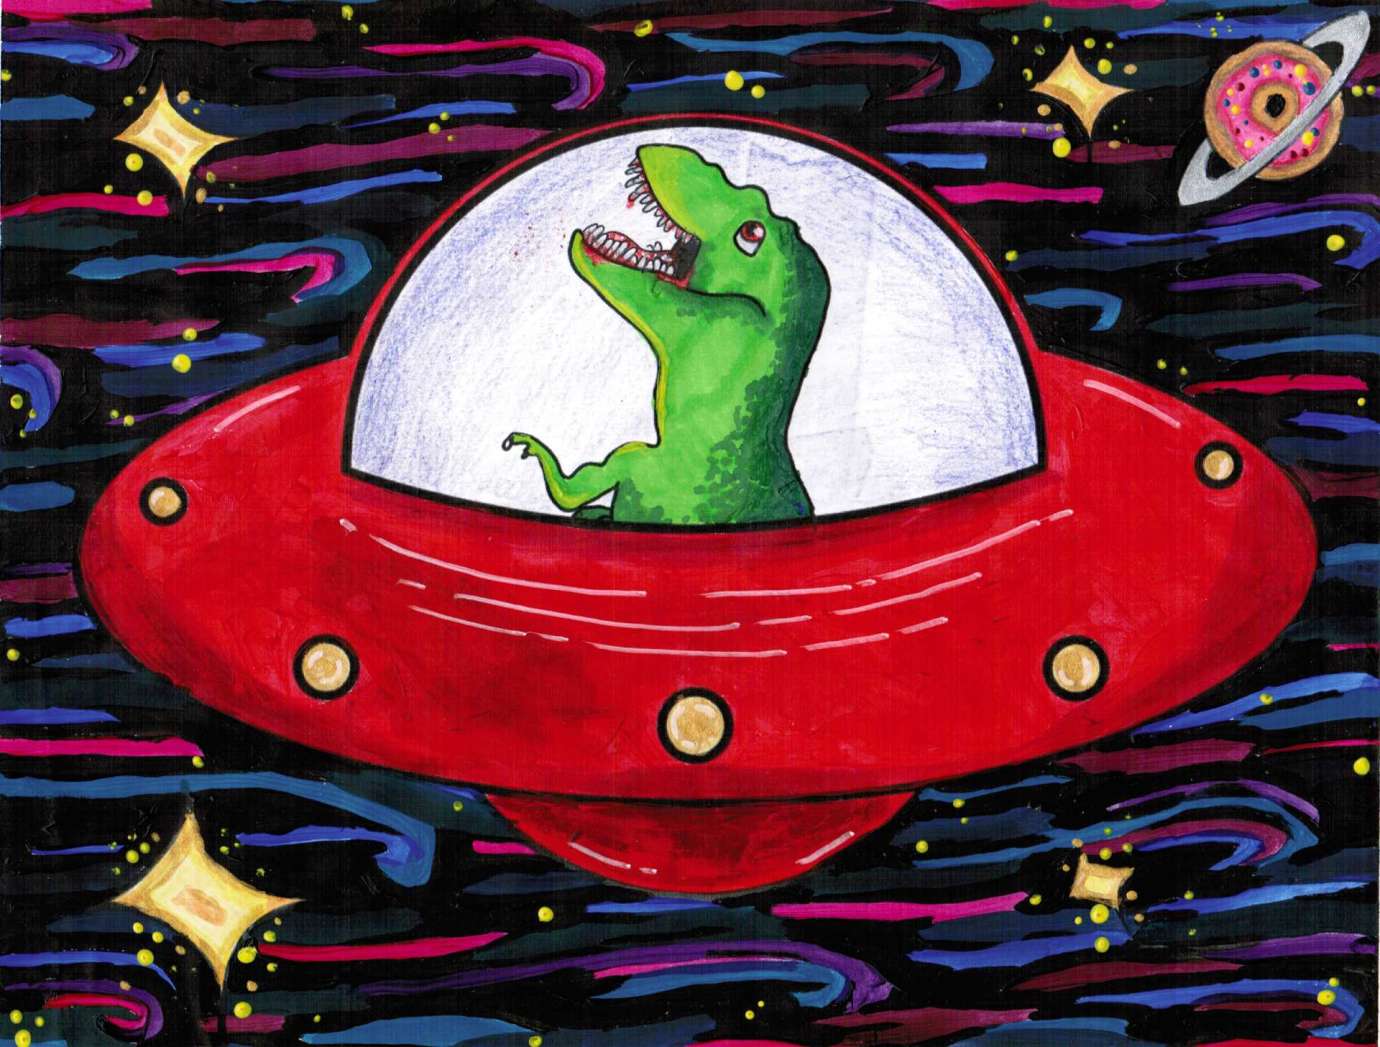 a t-rex drives a UFO through space